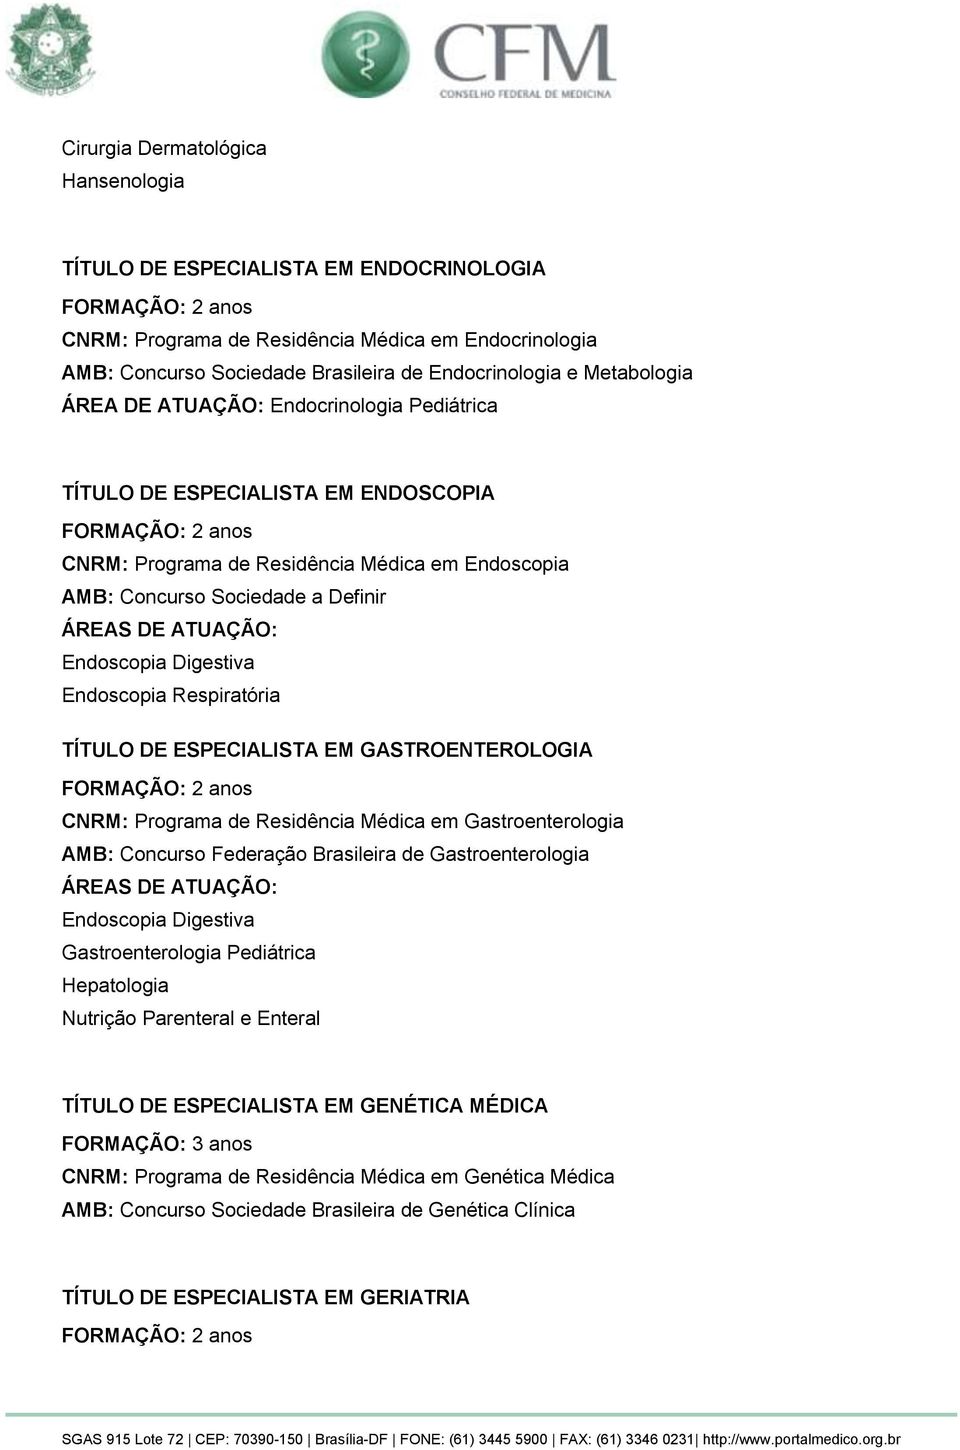 Respiratória TÍTULO DE ESPECIALISTA EM GASTROENTEROLOGIA CNRM: Programa de Residência Médica em Gastroenterologia AMB: Concurso Federação Brasileira de Gastroenterologia Endoscopia Digestiva